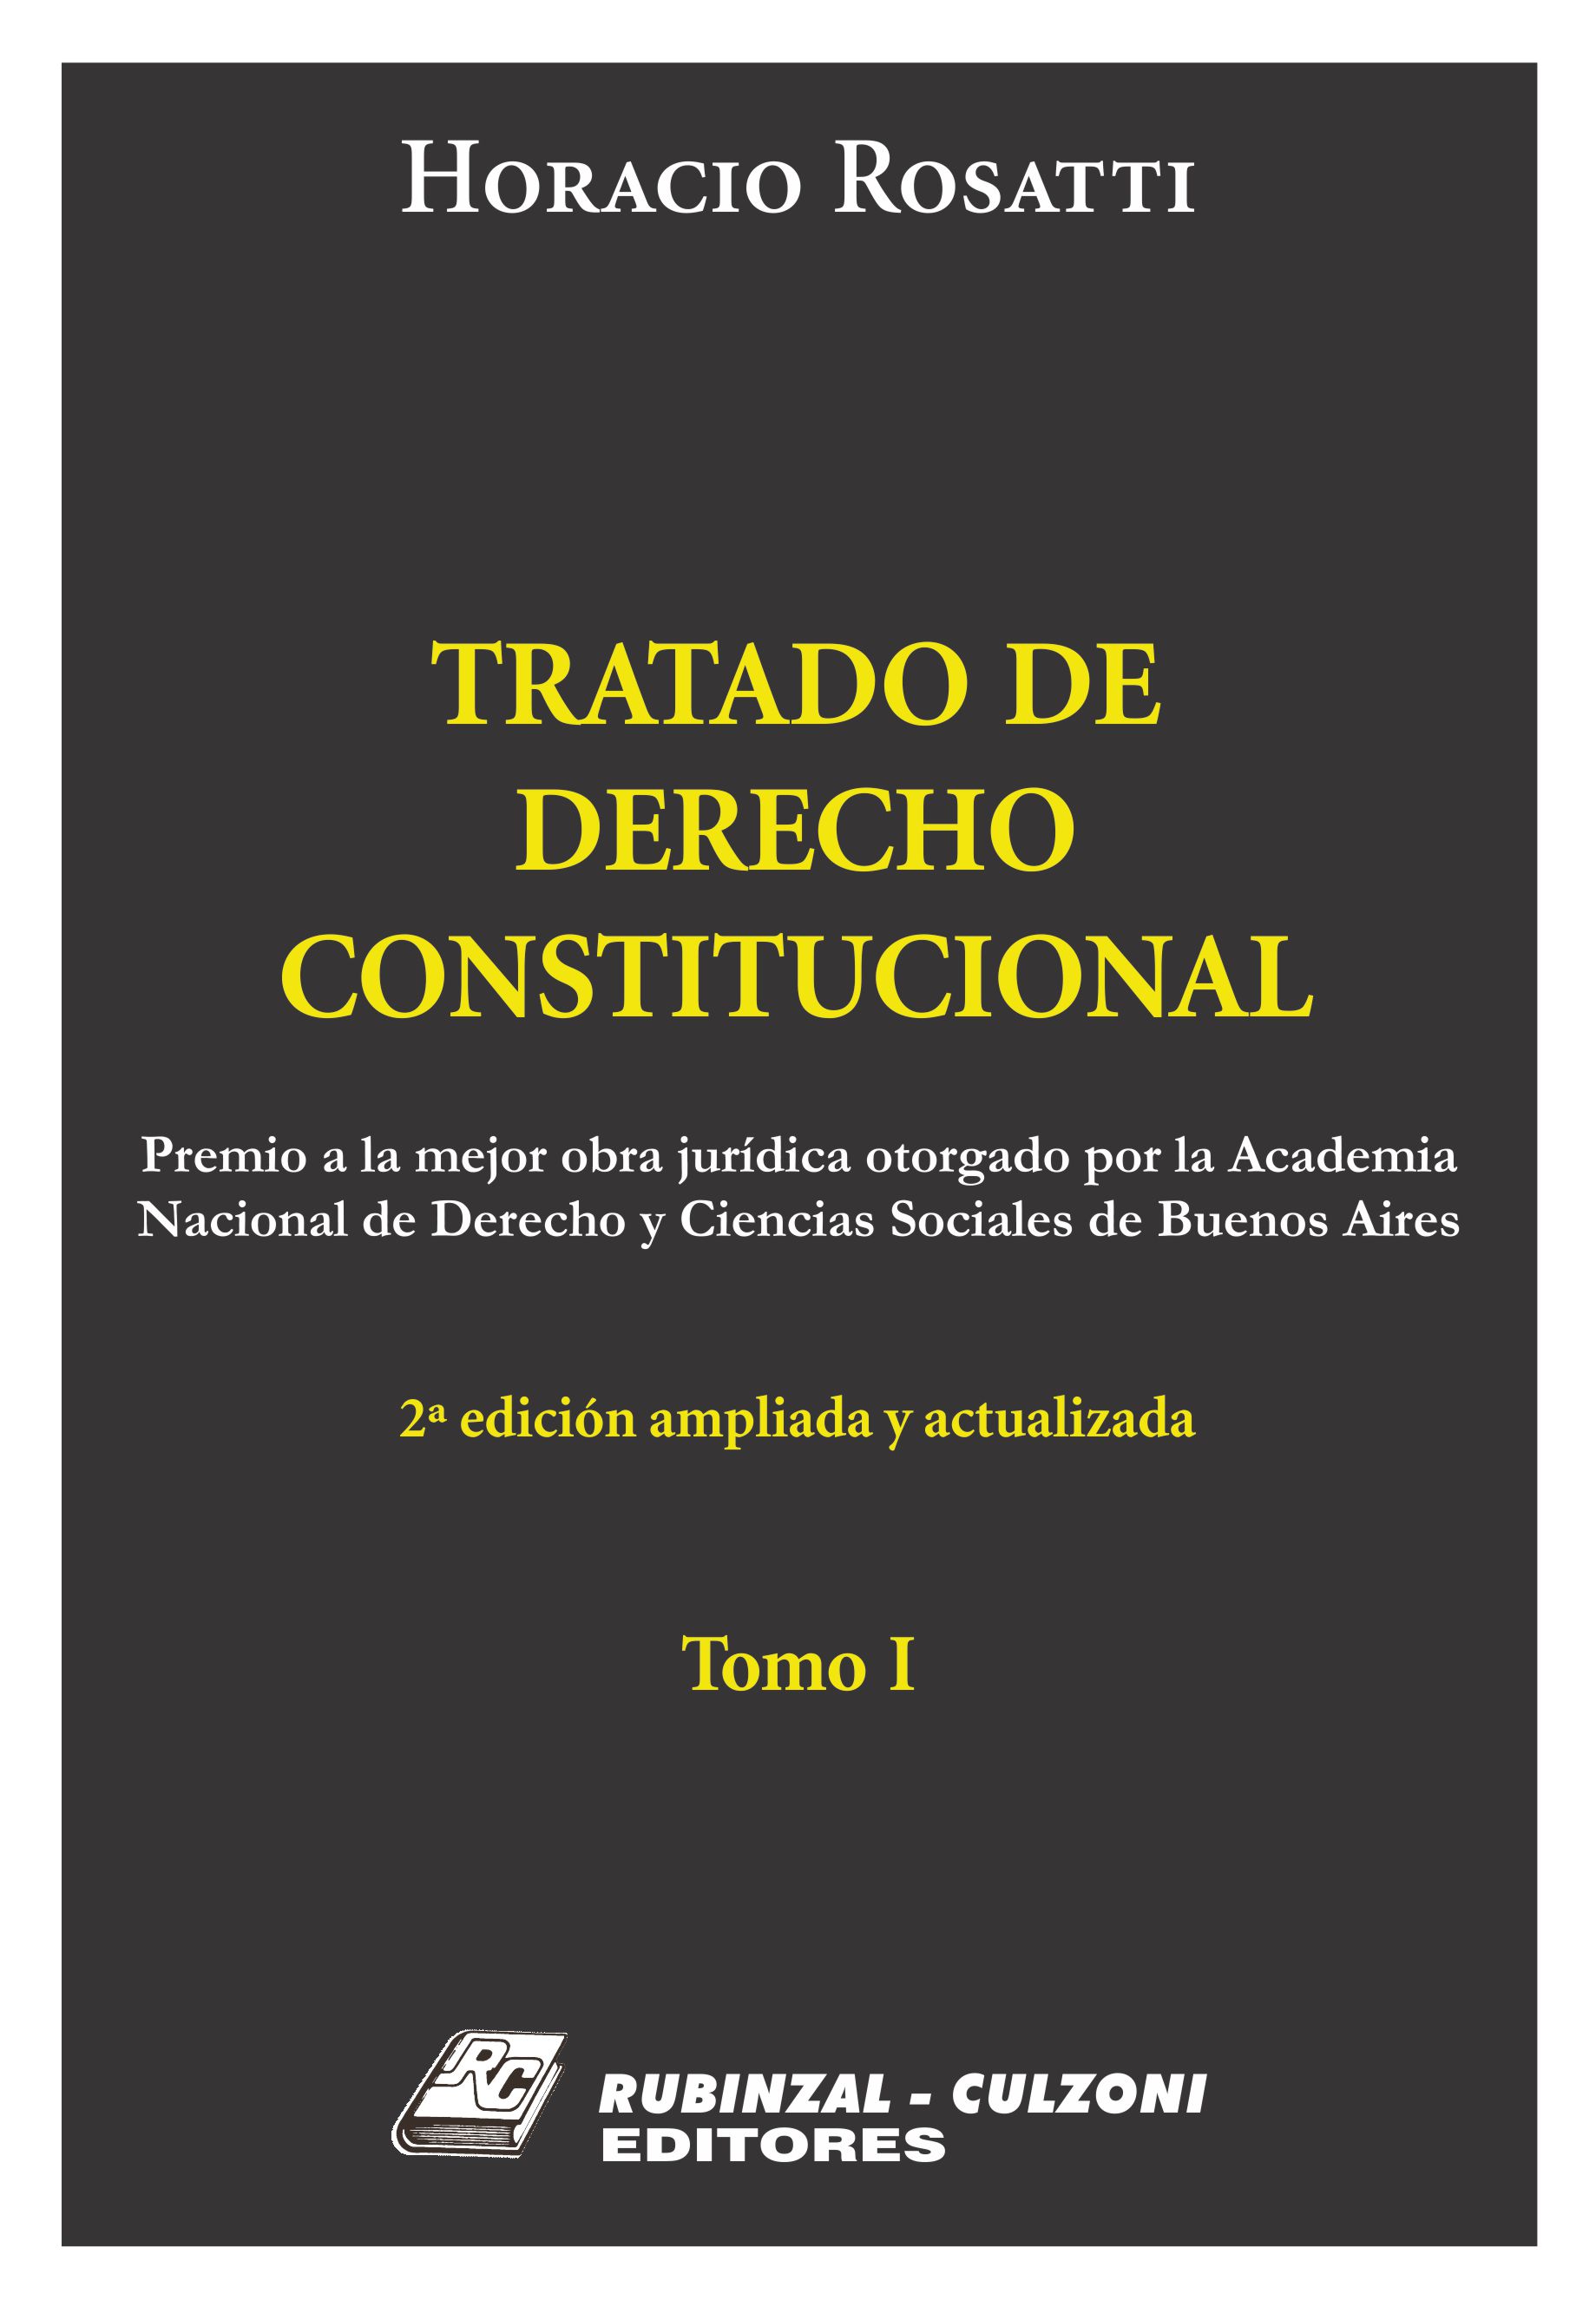 Tratado de Derecho Constitucional, 2ª Edición ampliada y actualizada - Tomo I